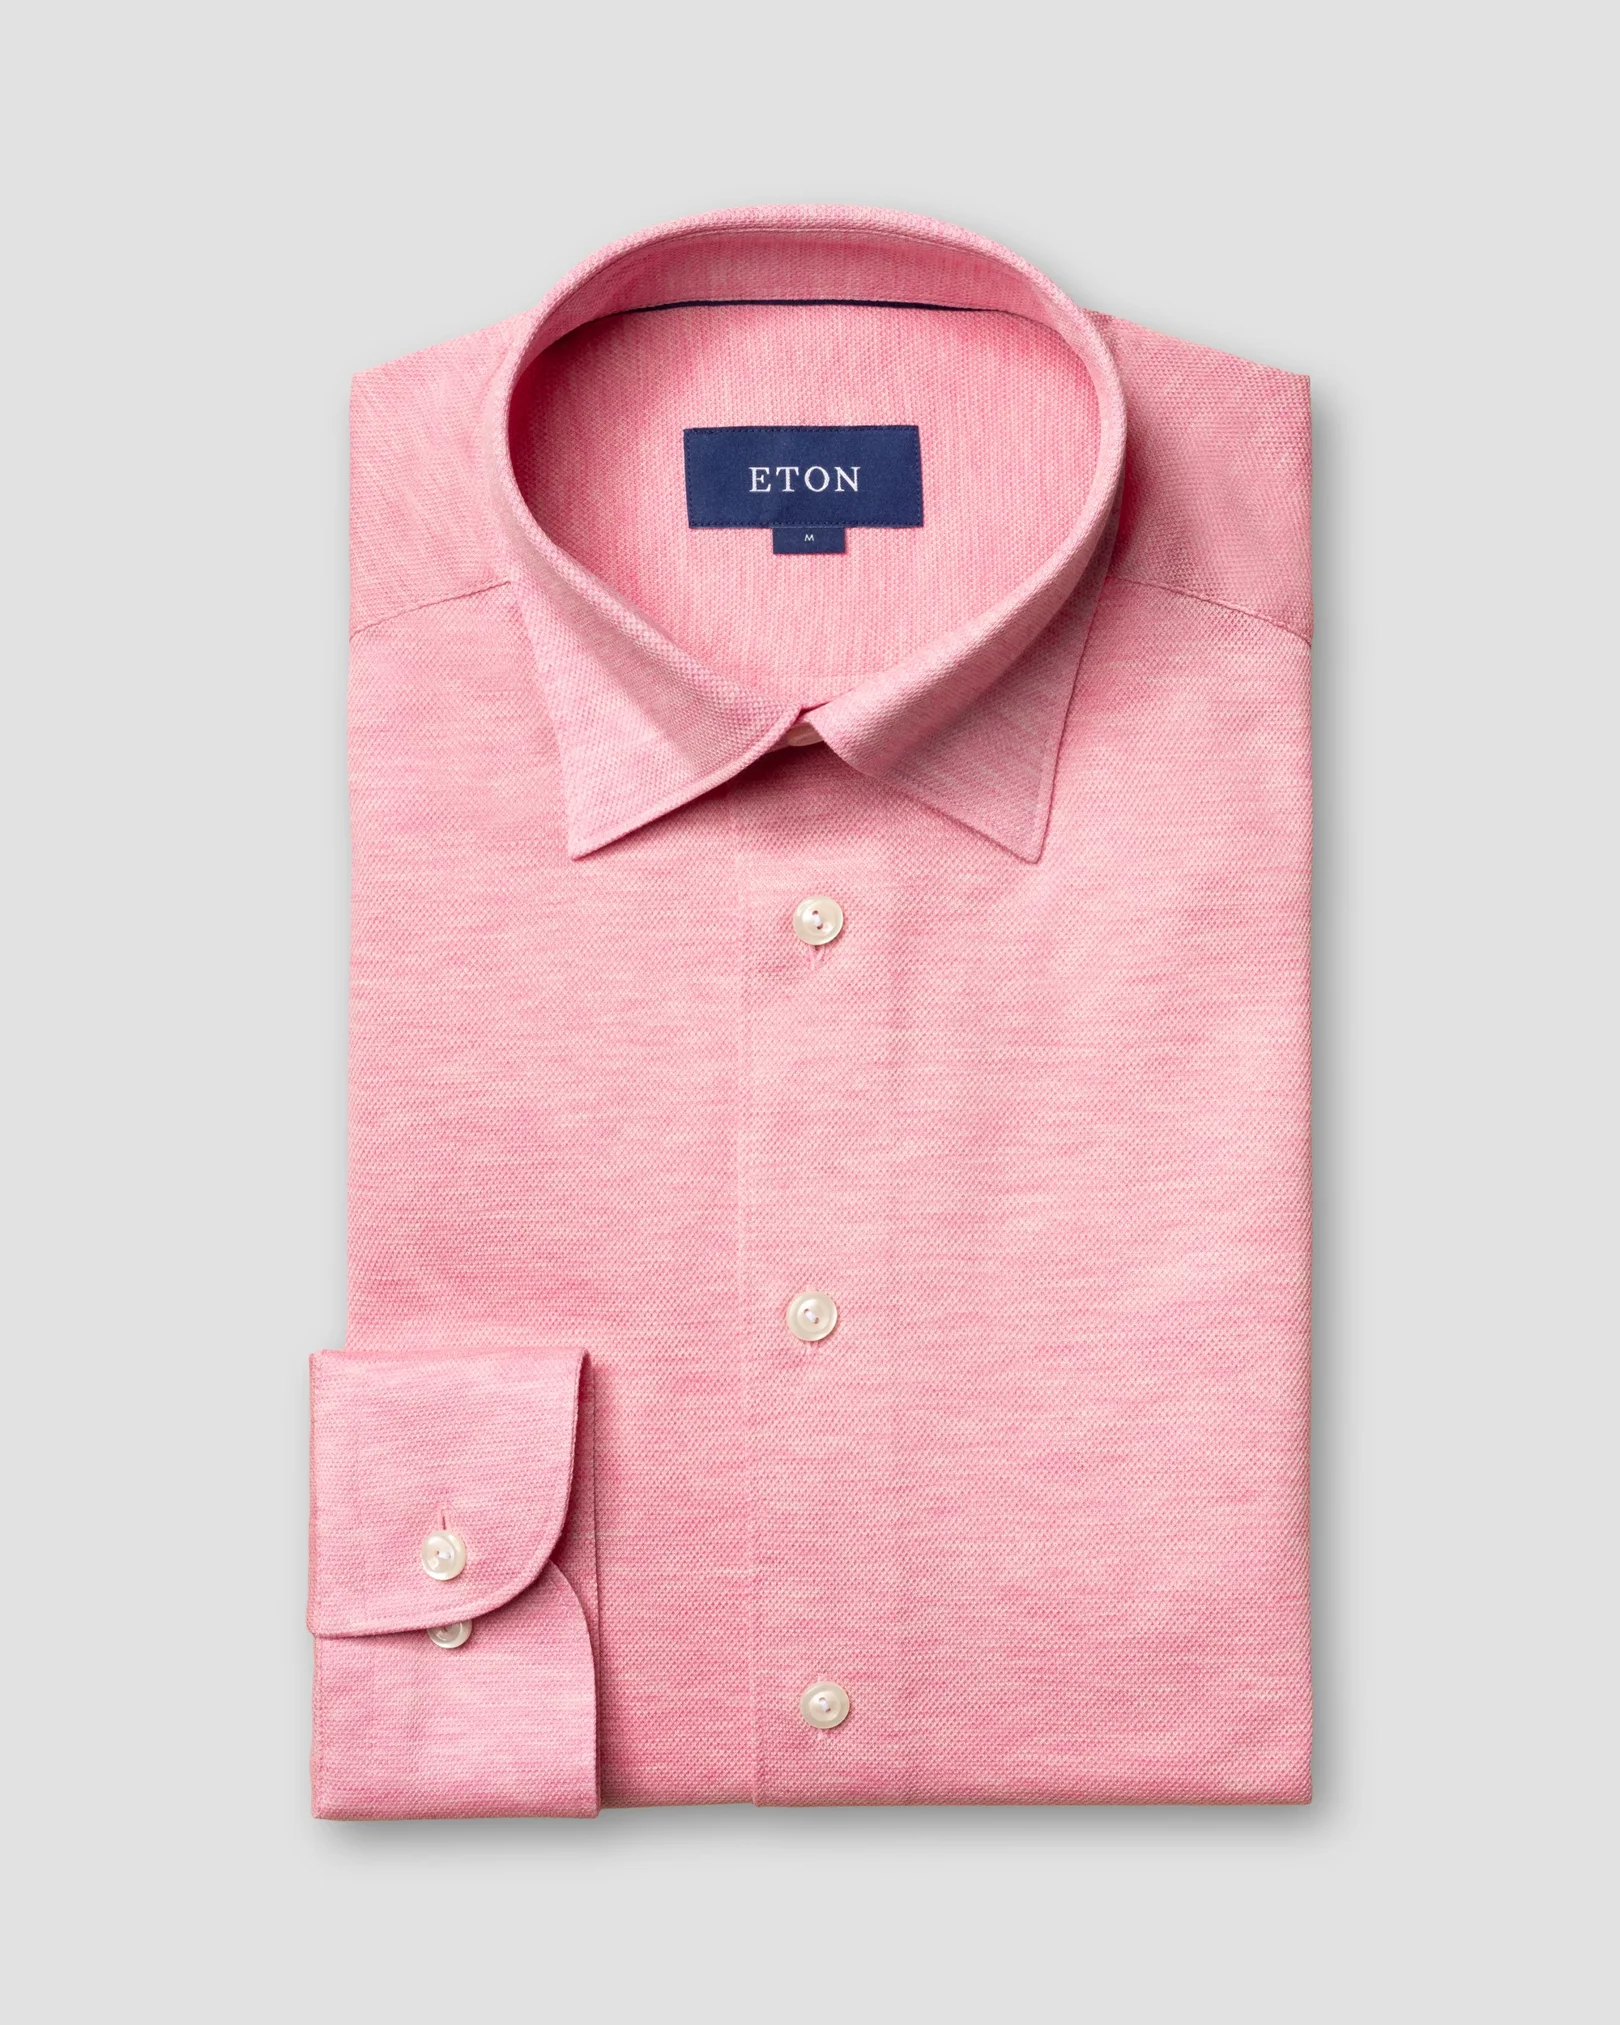 Eton - pink pique shirt long sleeved